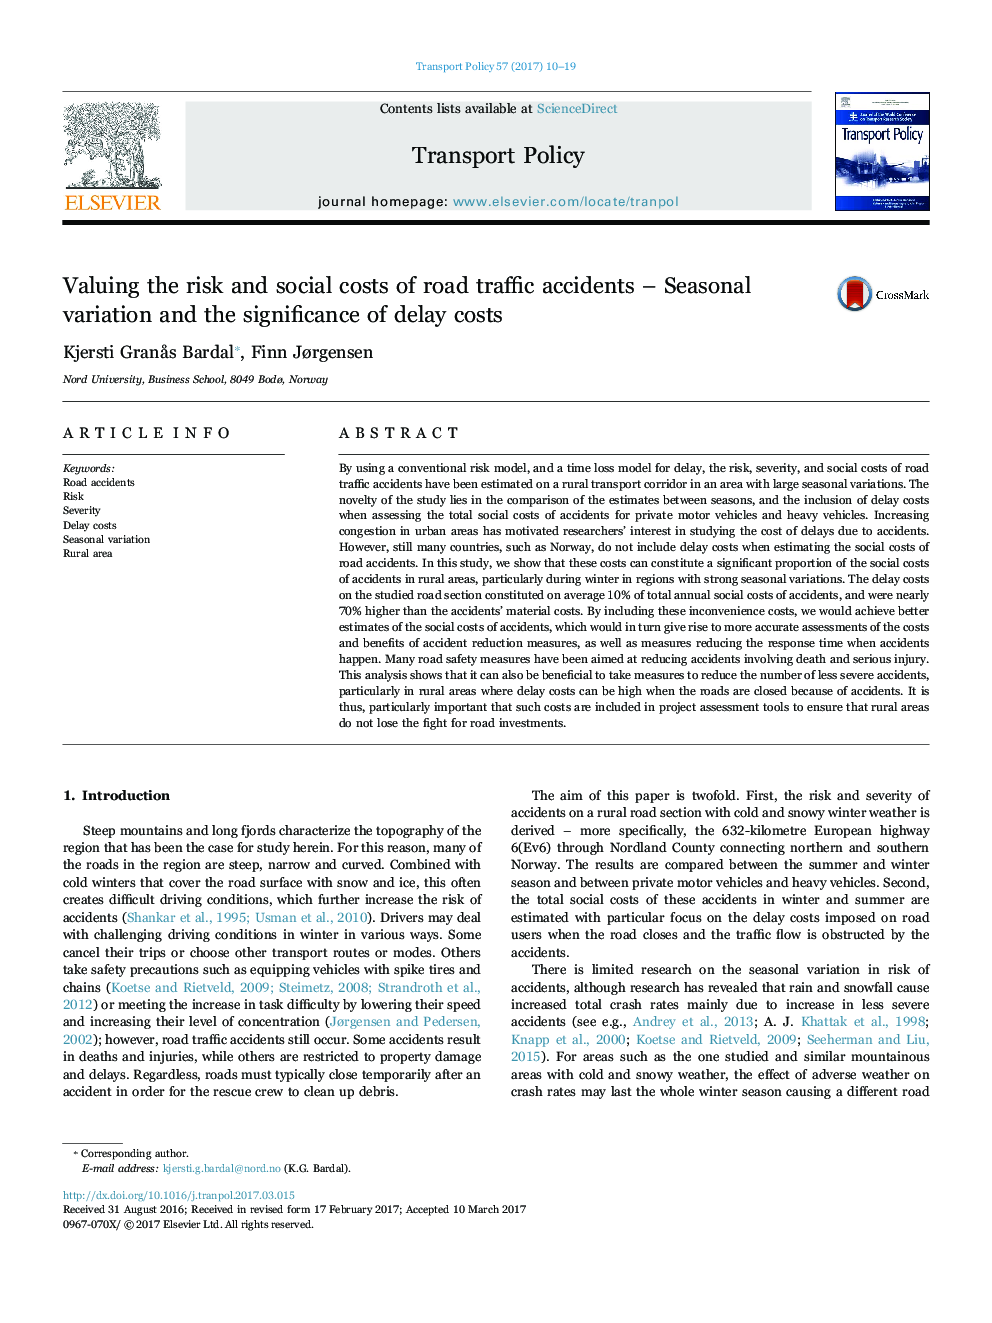 ارزیابی ریسک و هزینه های اجتماعی تصادفات جاده ای - تنوع فصلی و اهمیت هزینه های تاخیری 